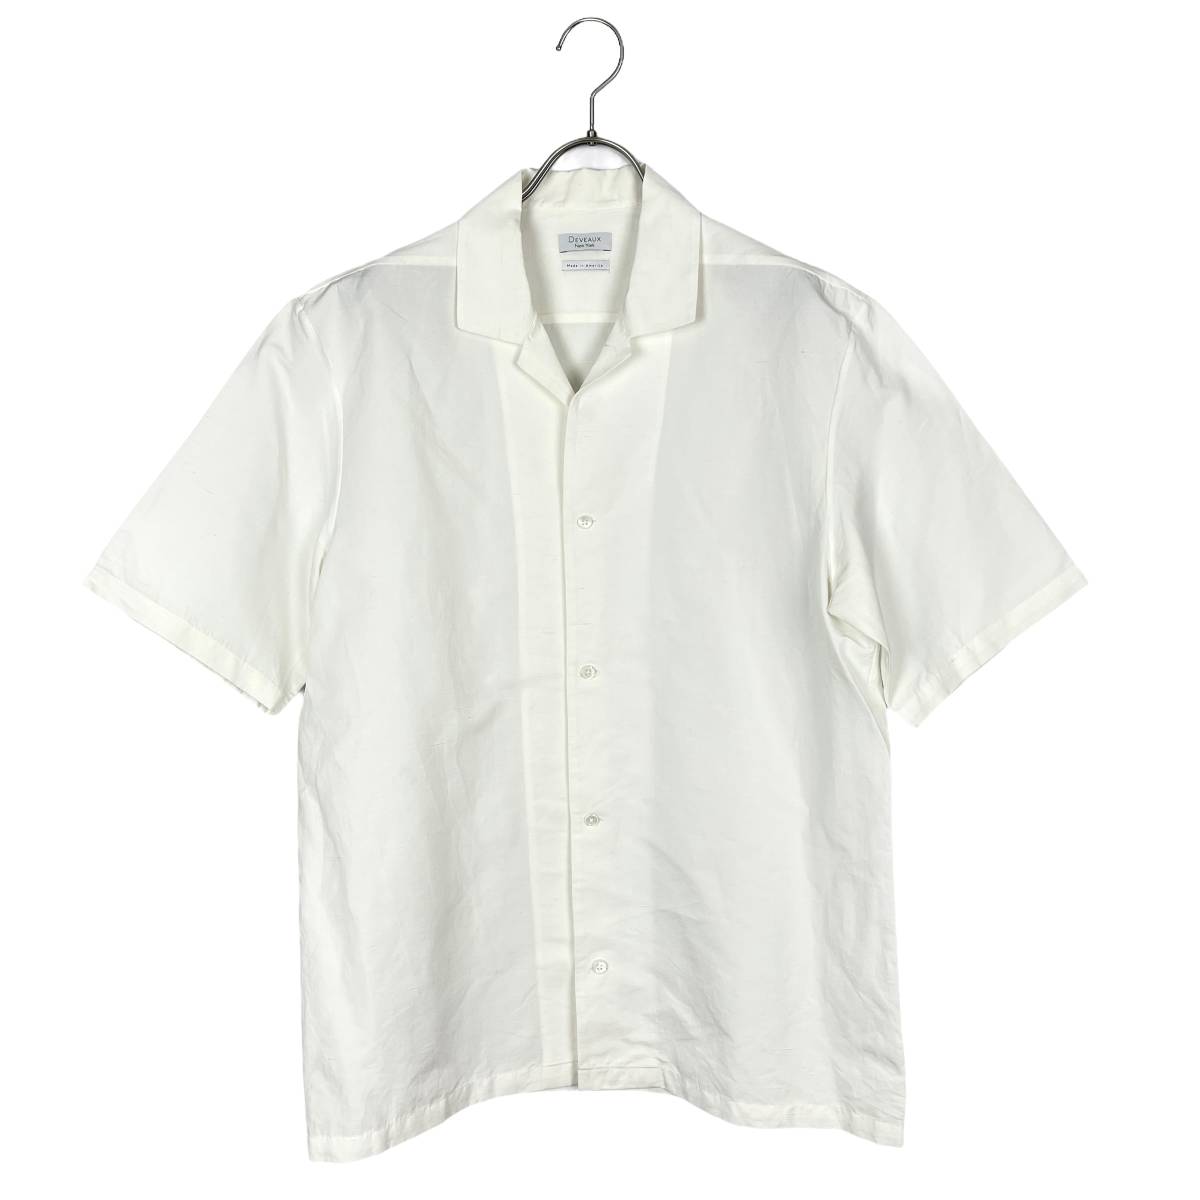 お気に入りの sleeve short DEVEAUX(デヴォー) slab (white) shirts 文字、ロゴ